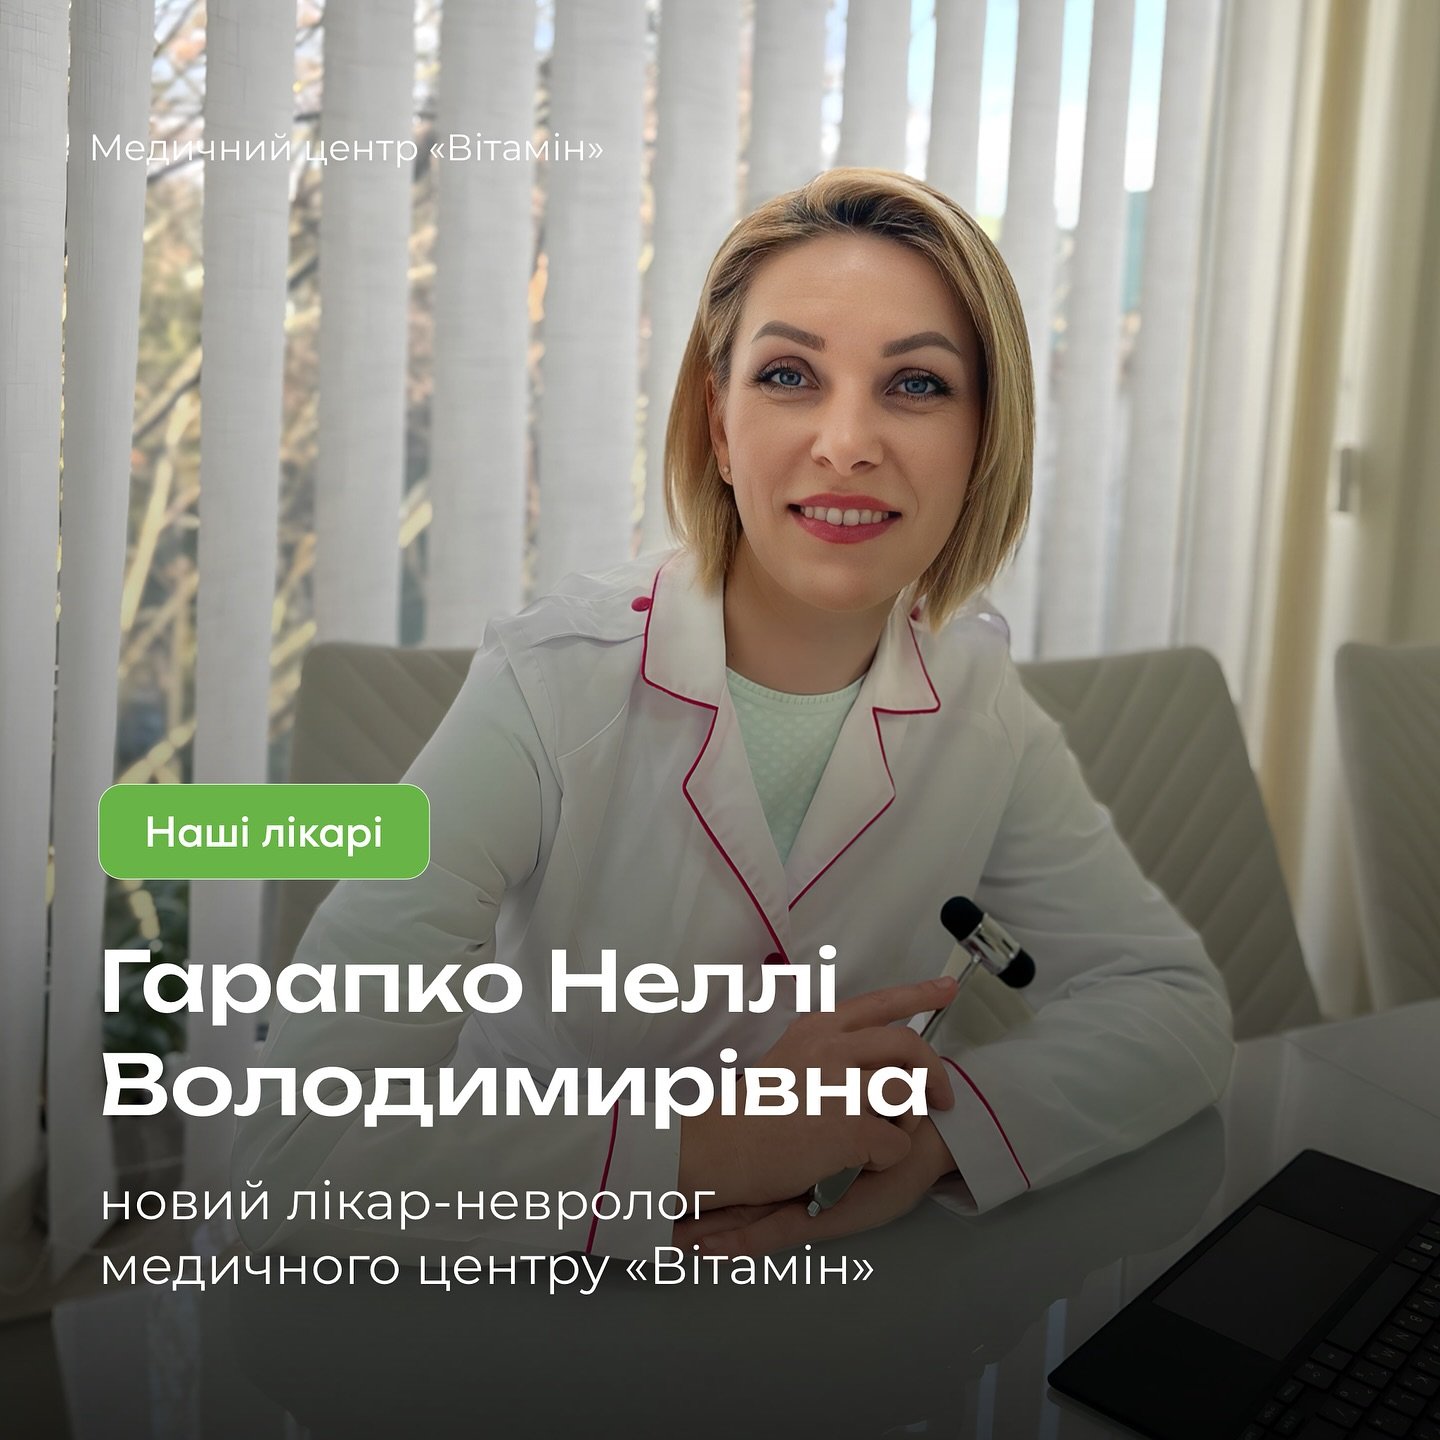 Гарапко Неллі Володимирівна - лікар-невролог зі стажем роботи 22 роки та вищою категорією. - Медичний центр Вітамін